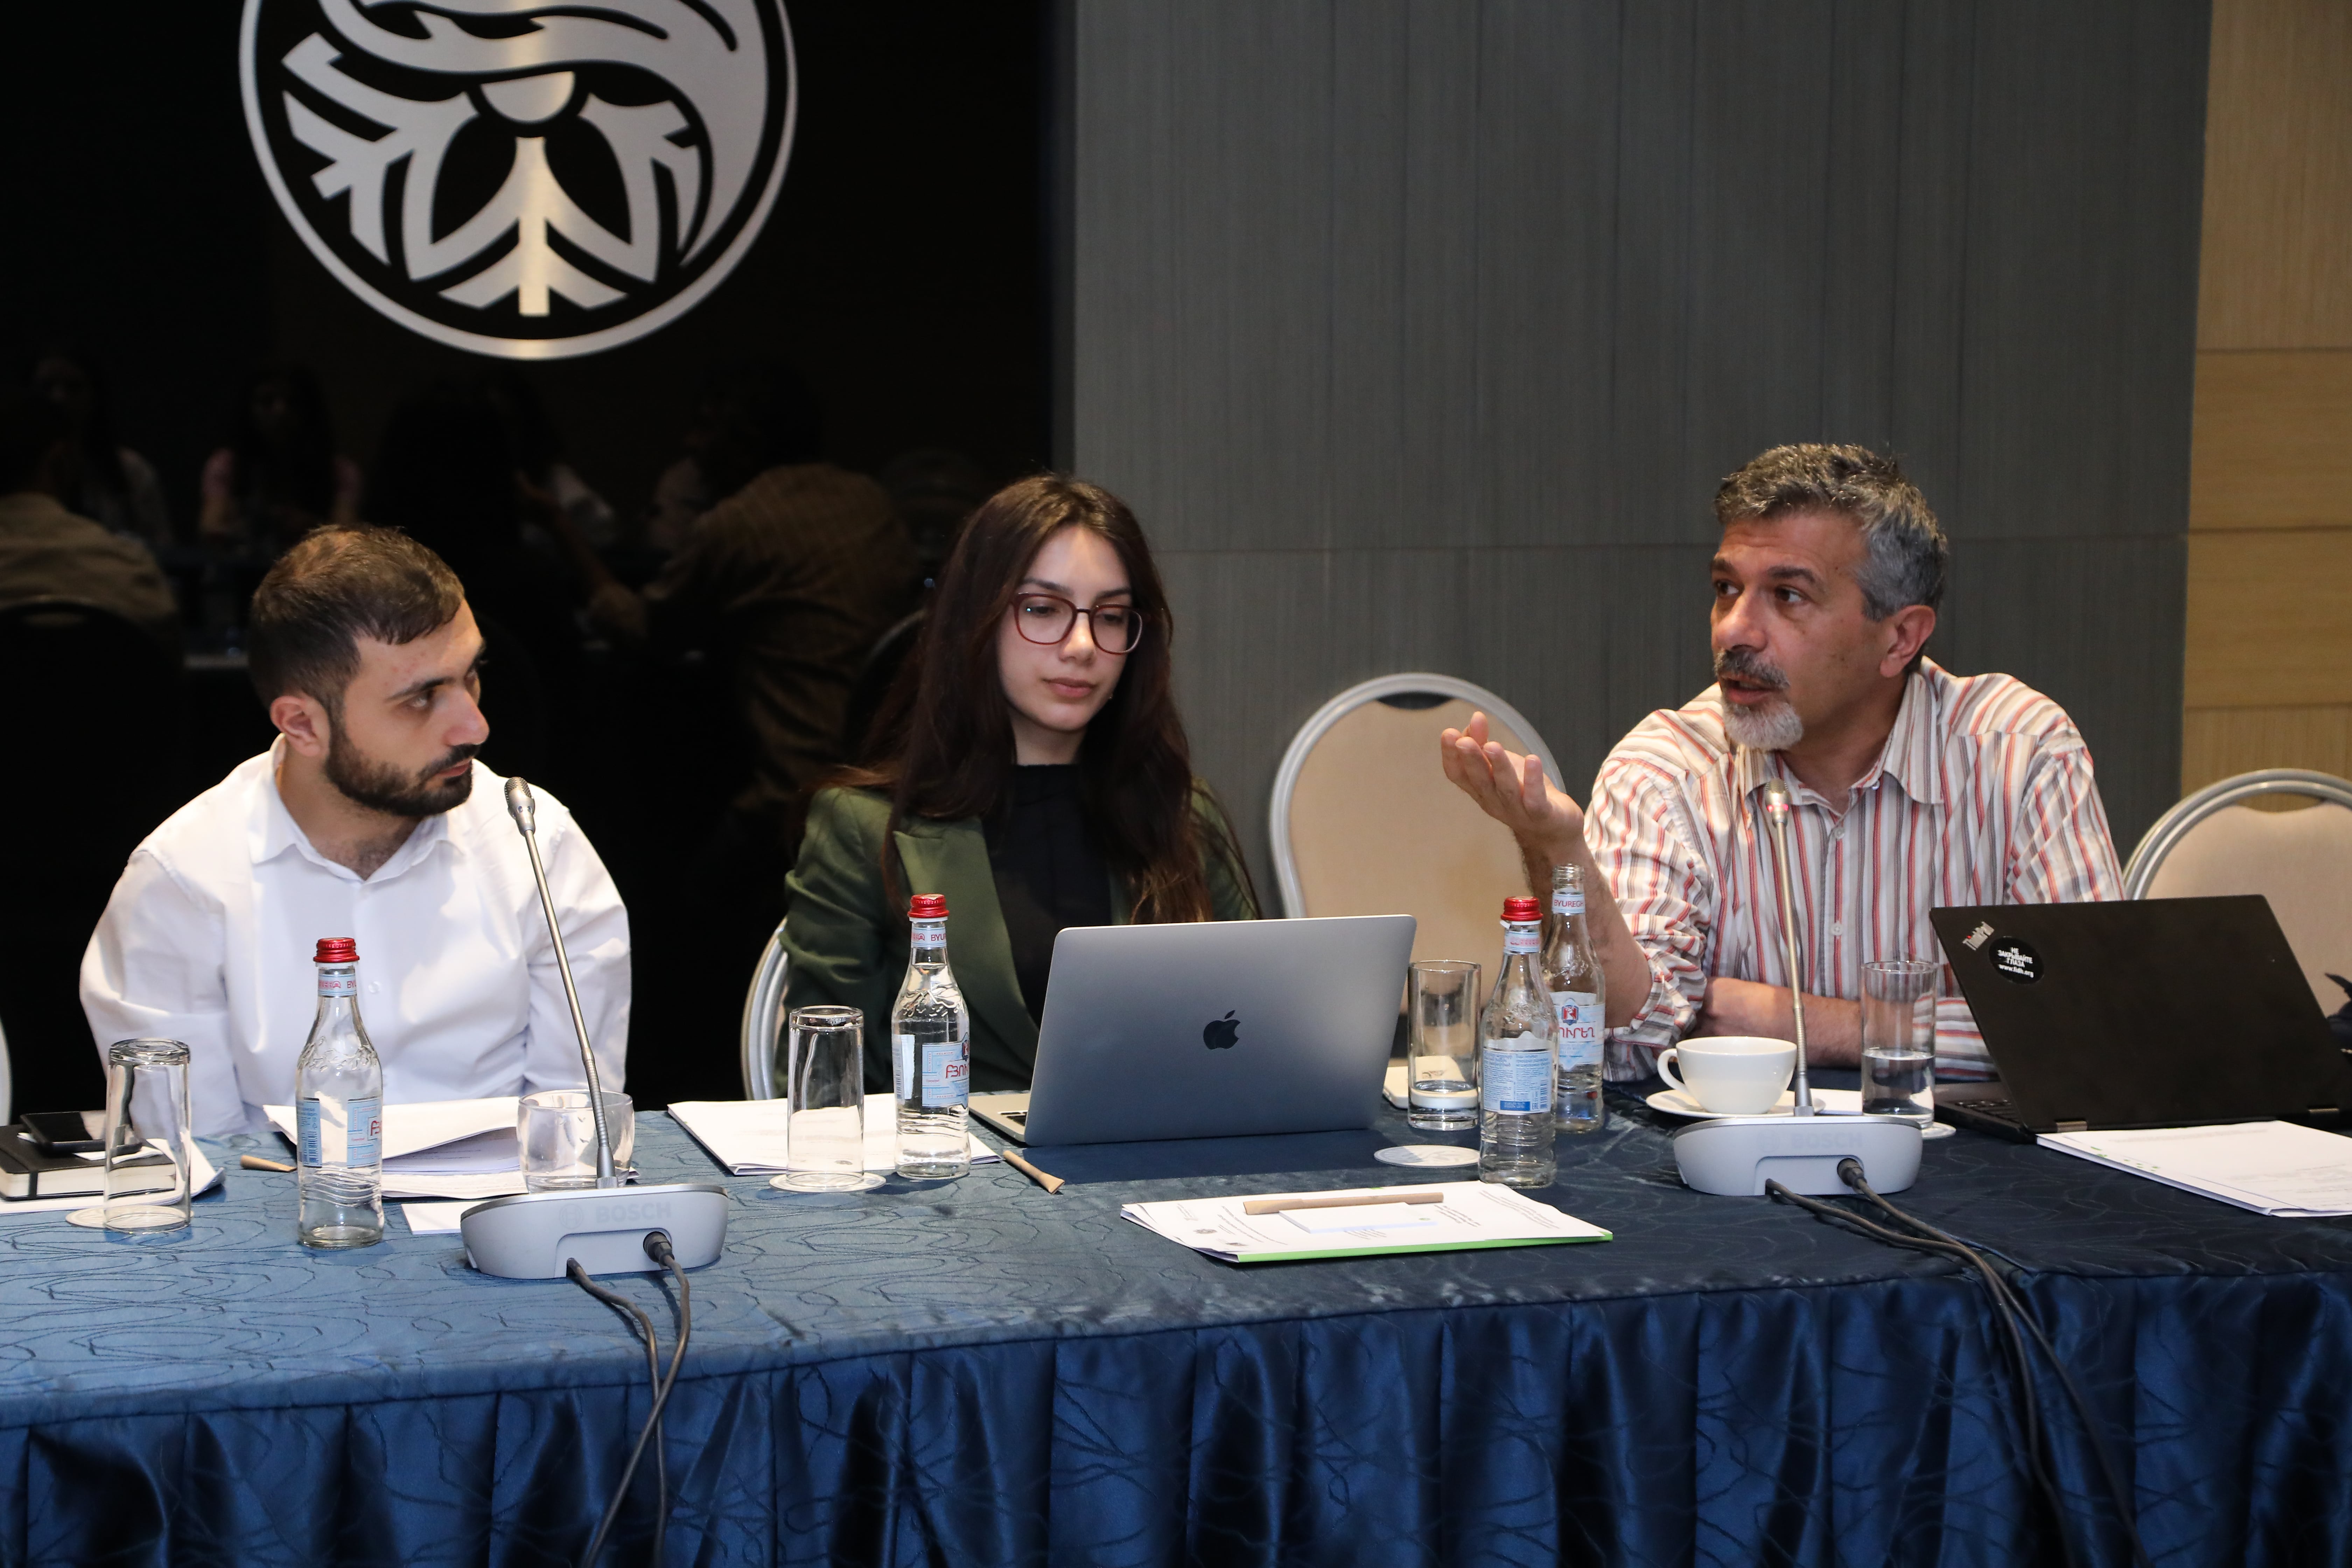 Կլոր սեղան-քննարկում` նվիրված Հայաստանում ընթացող դատաիրավական  բարեփոխումների ռազմավարական ուղղություններին